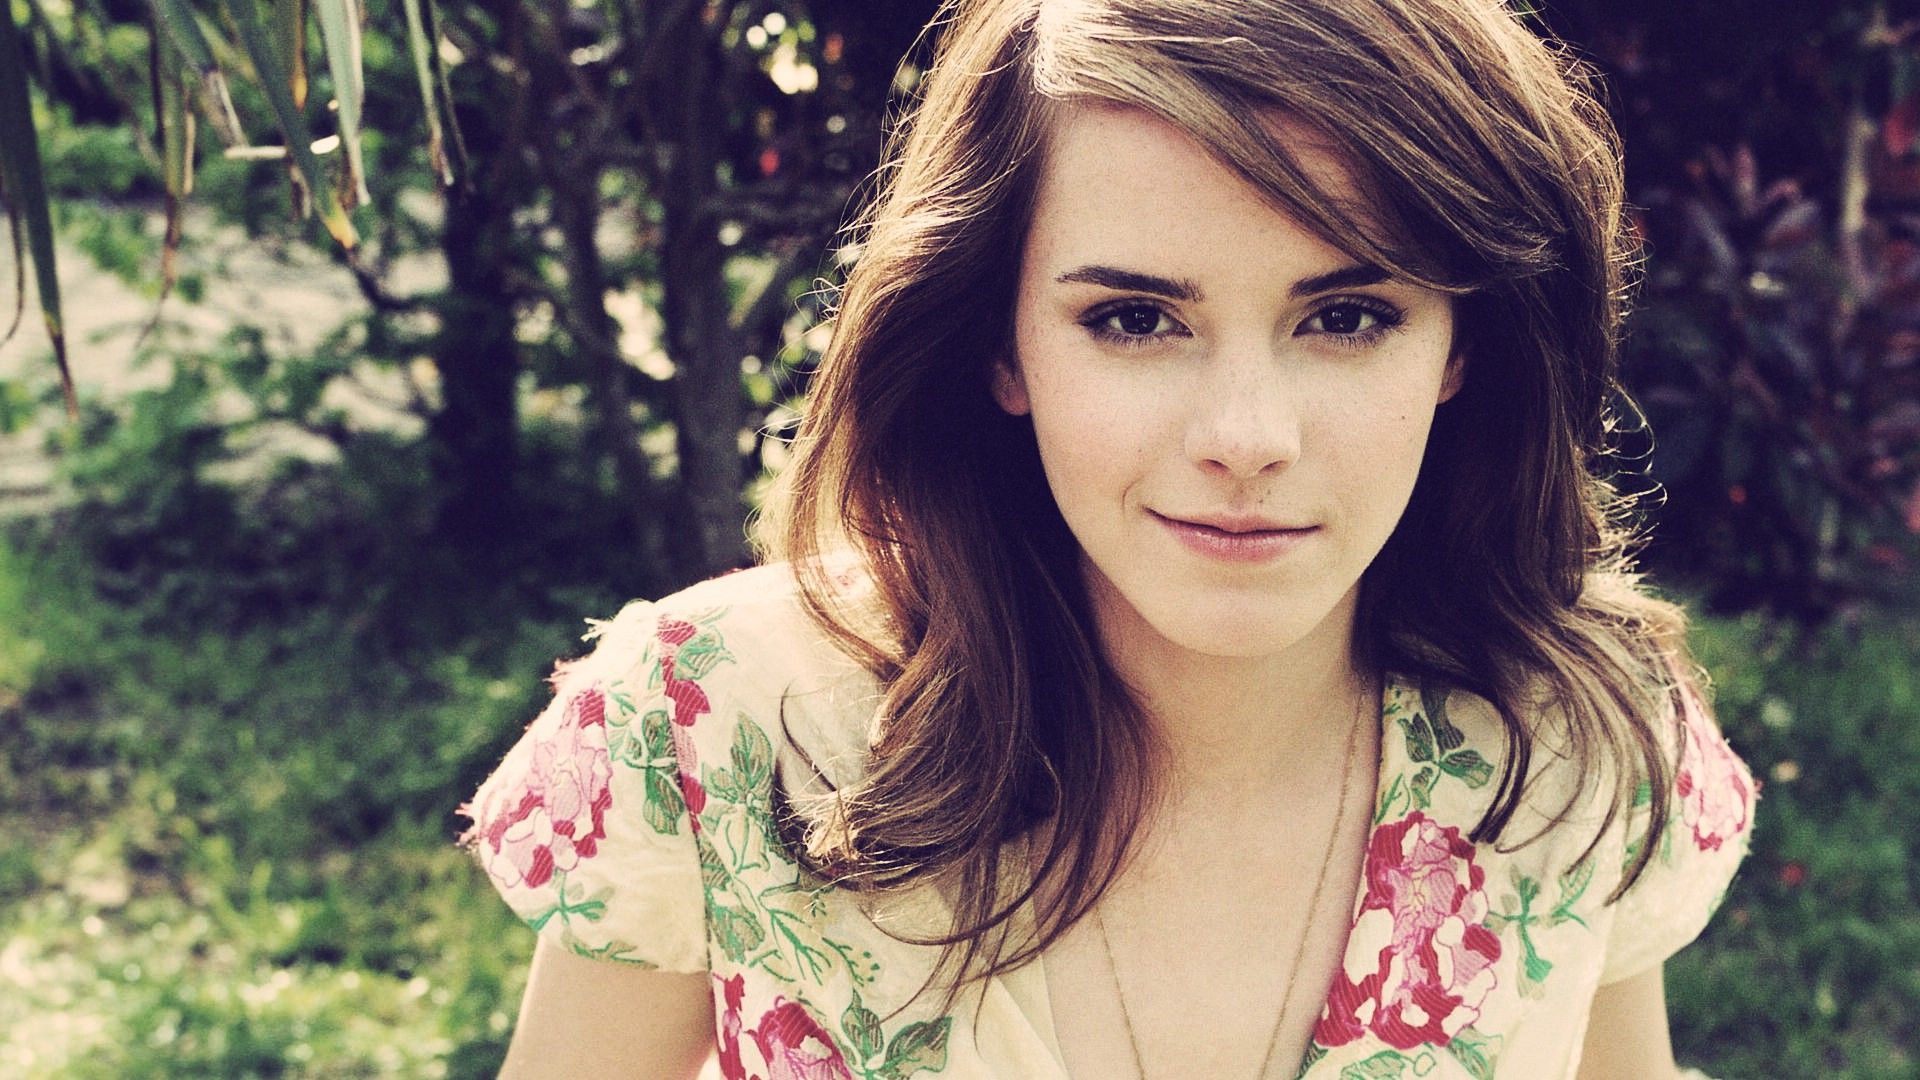 Emma Watson HD Wallpaperwallpaper.net